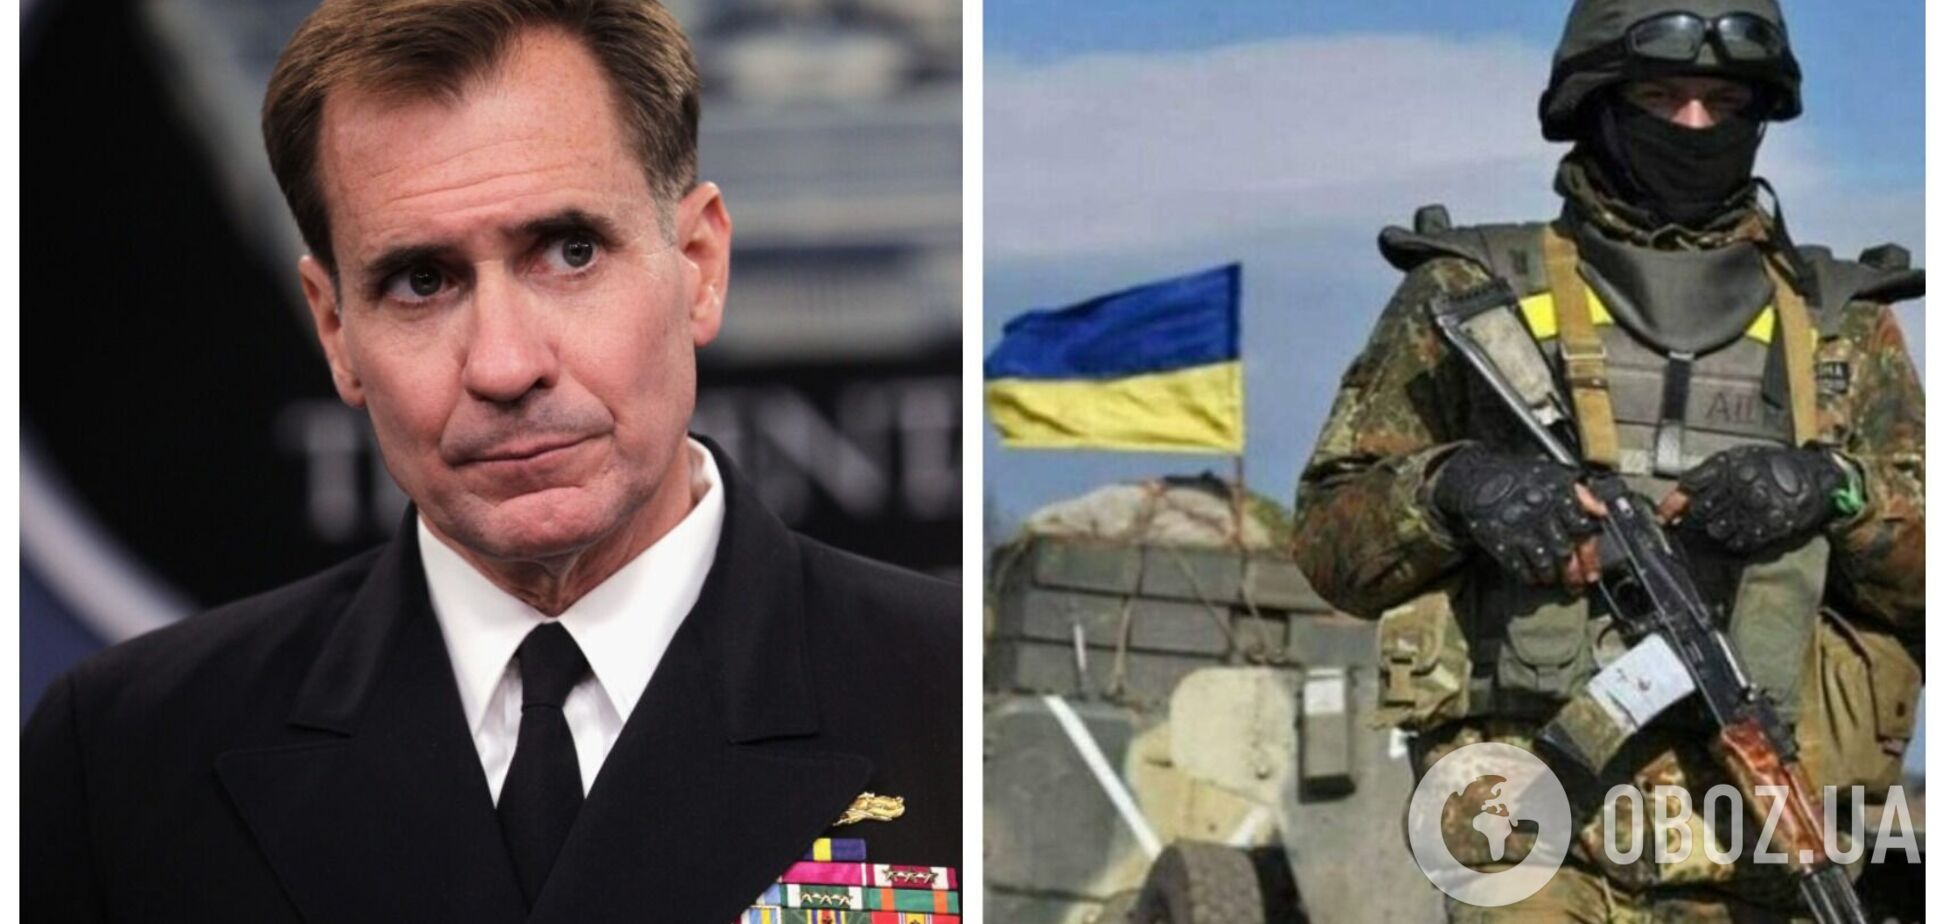 США обсуждают возможность передачи Украине средств ПВО и других вооружений для защиты от агрессии РФ